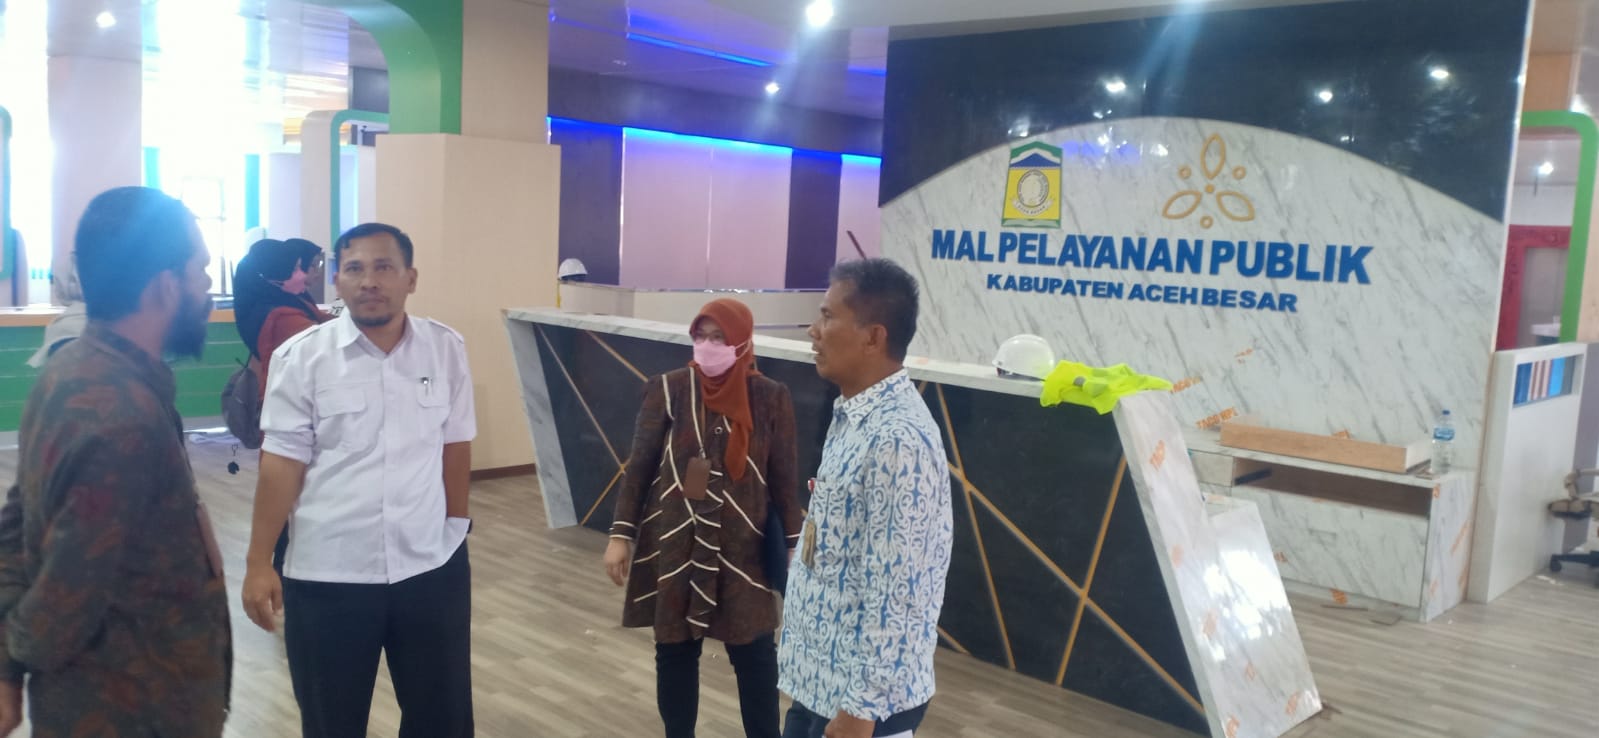 Ombudsman RI Soroti Tidak Terawatnya Gedung Mall Pelayanan Publik Aceh Besar di Lambaro